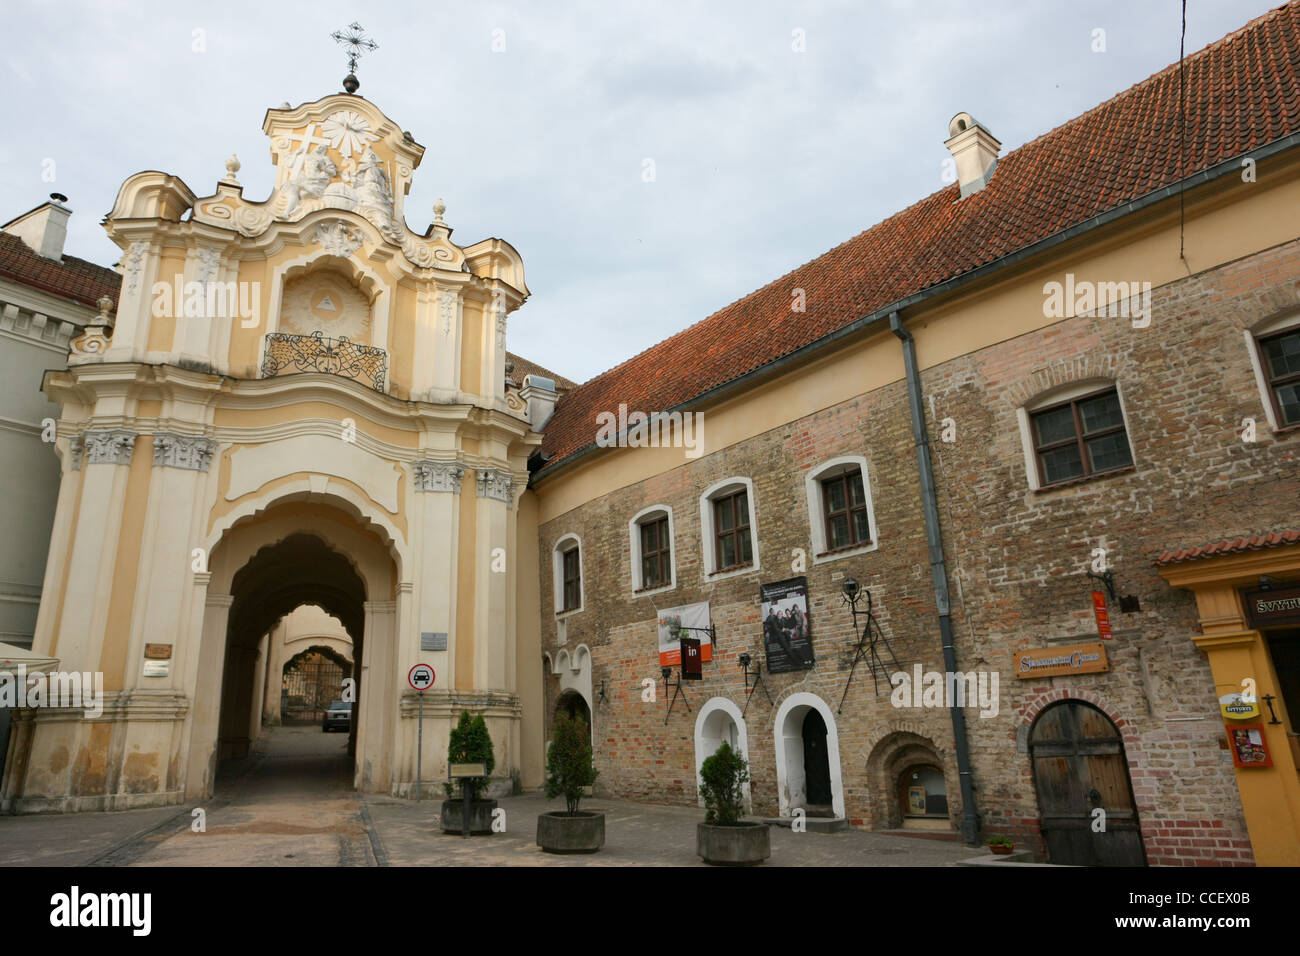 Ostra Brama à Vilnius (Porte de l'Aurore) - porte de ville dans la vieille ville de Vilnius, gothique. Banque D'Images